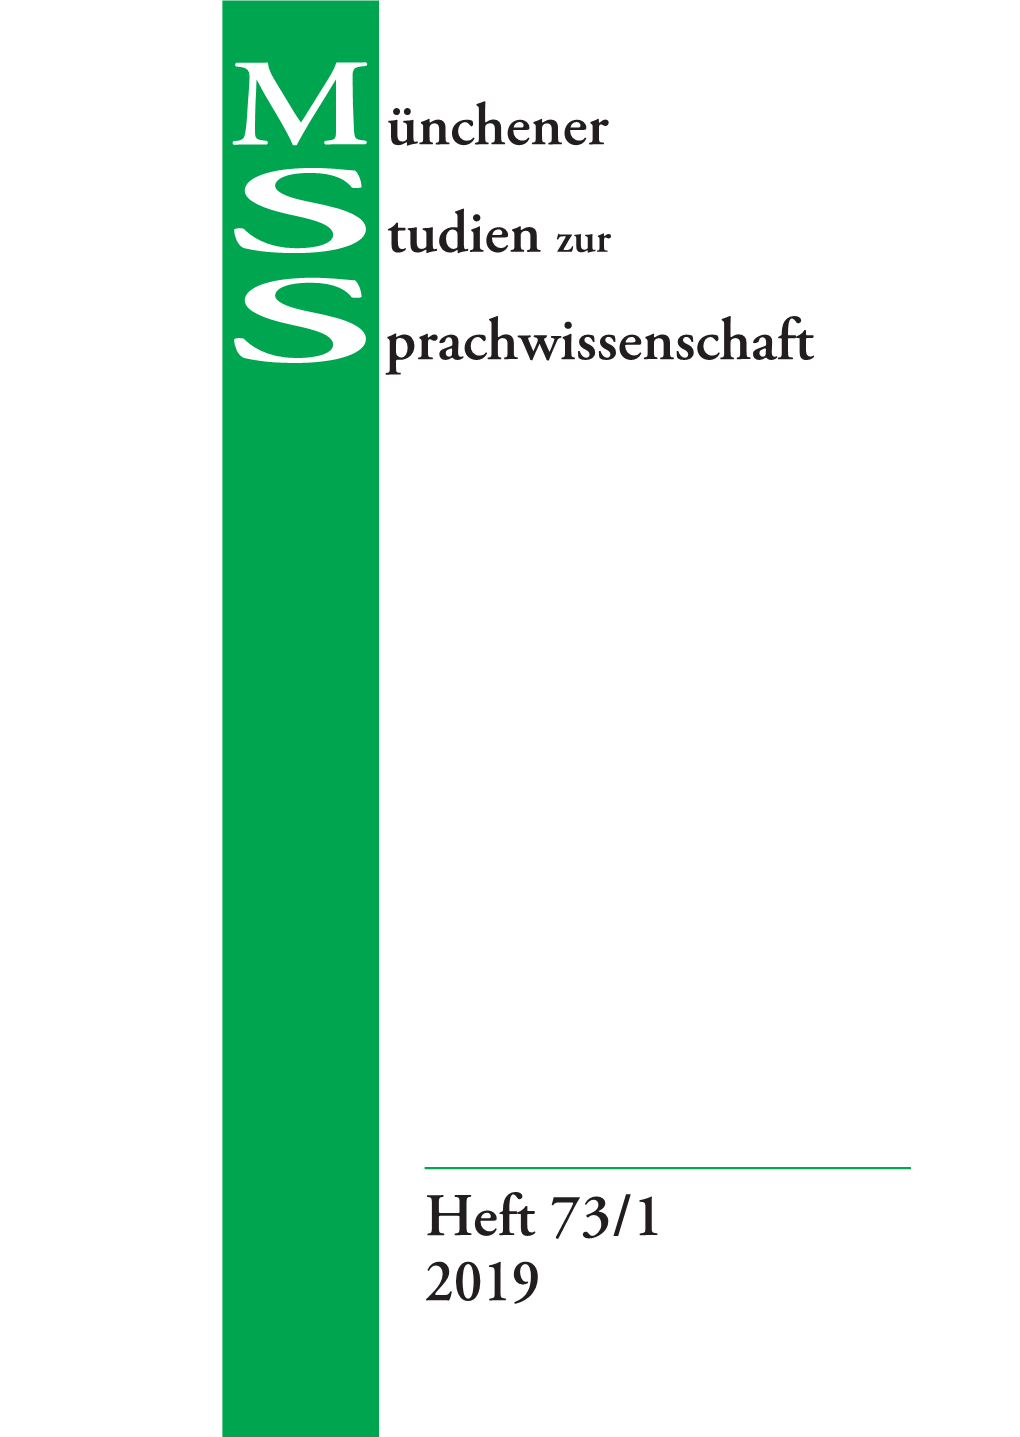 Heft 73/1 2019 Ünchener Tudien Zur Prachwissenschaft